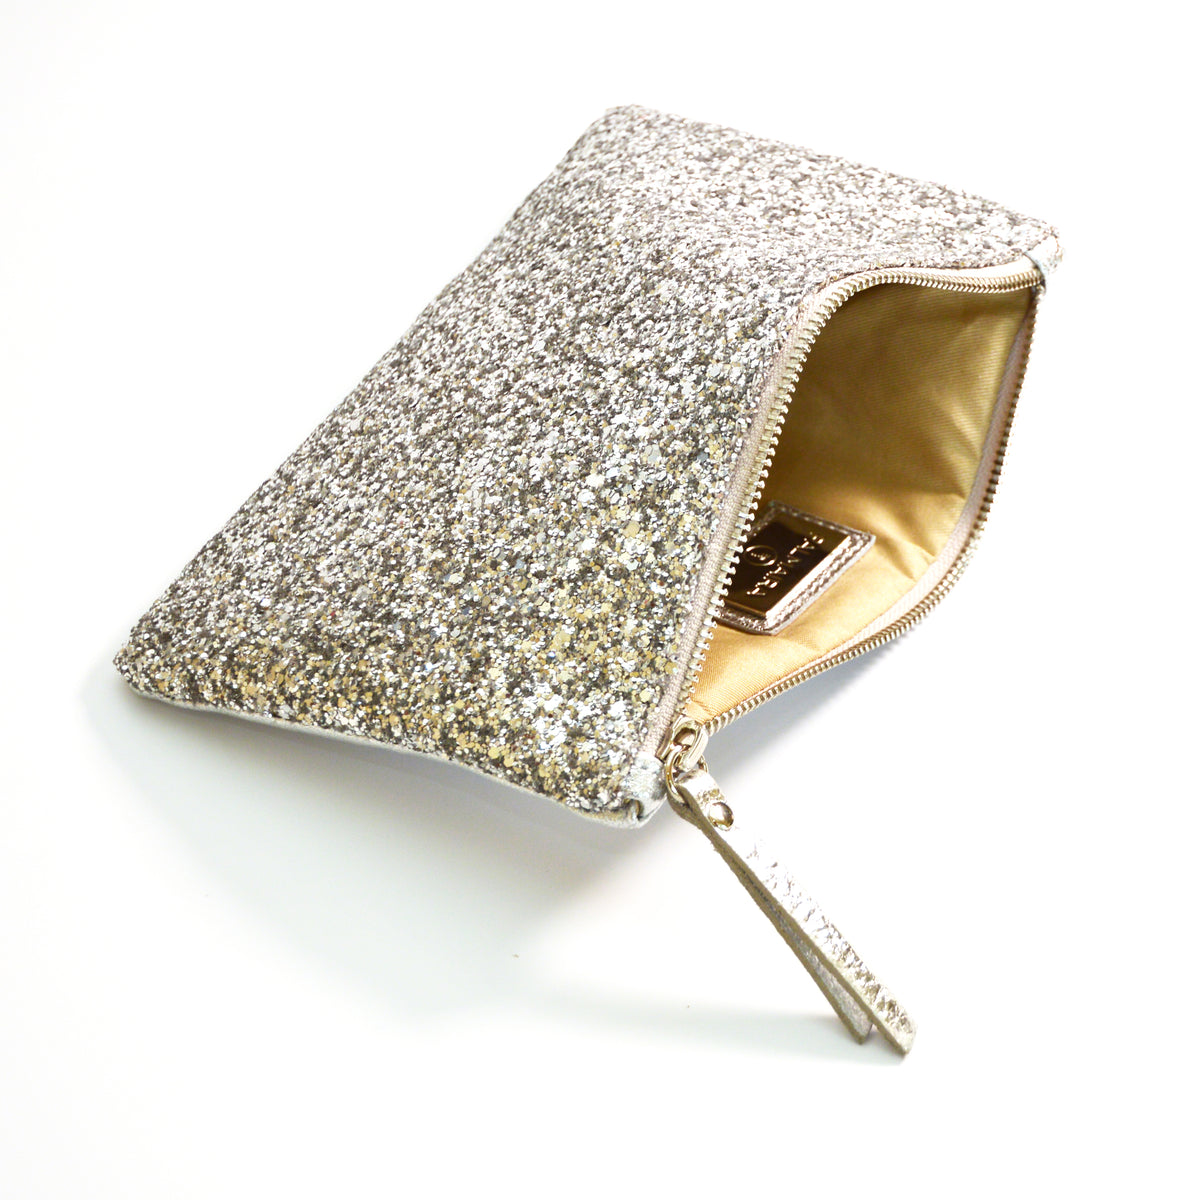 Silver Glitter mini clutch bag